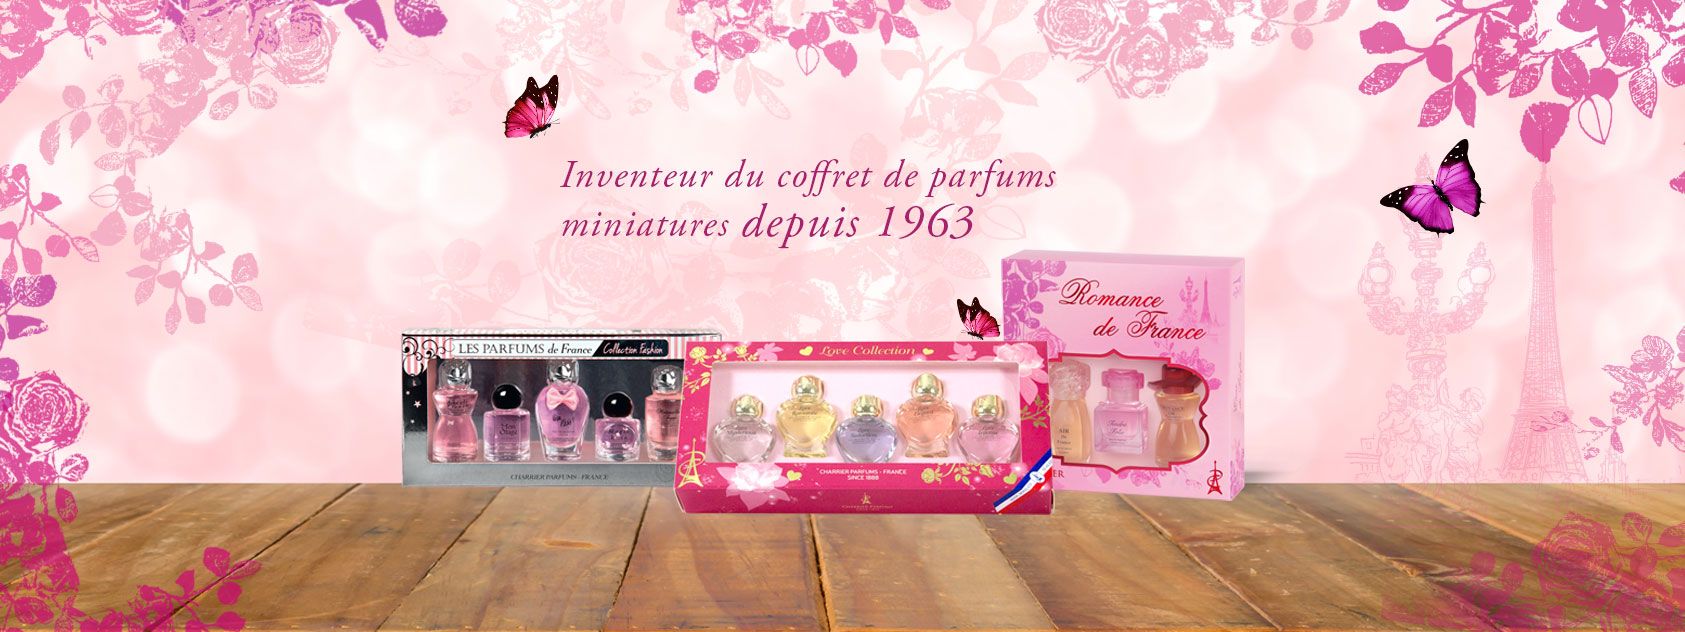 Inventeur du coffret de parfums miniatures depuis 1963